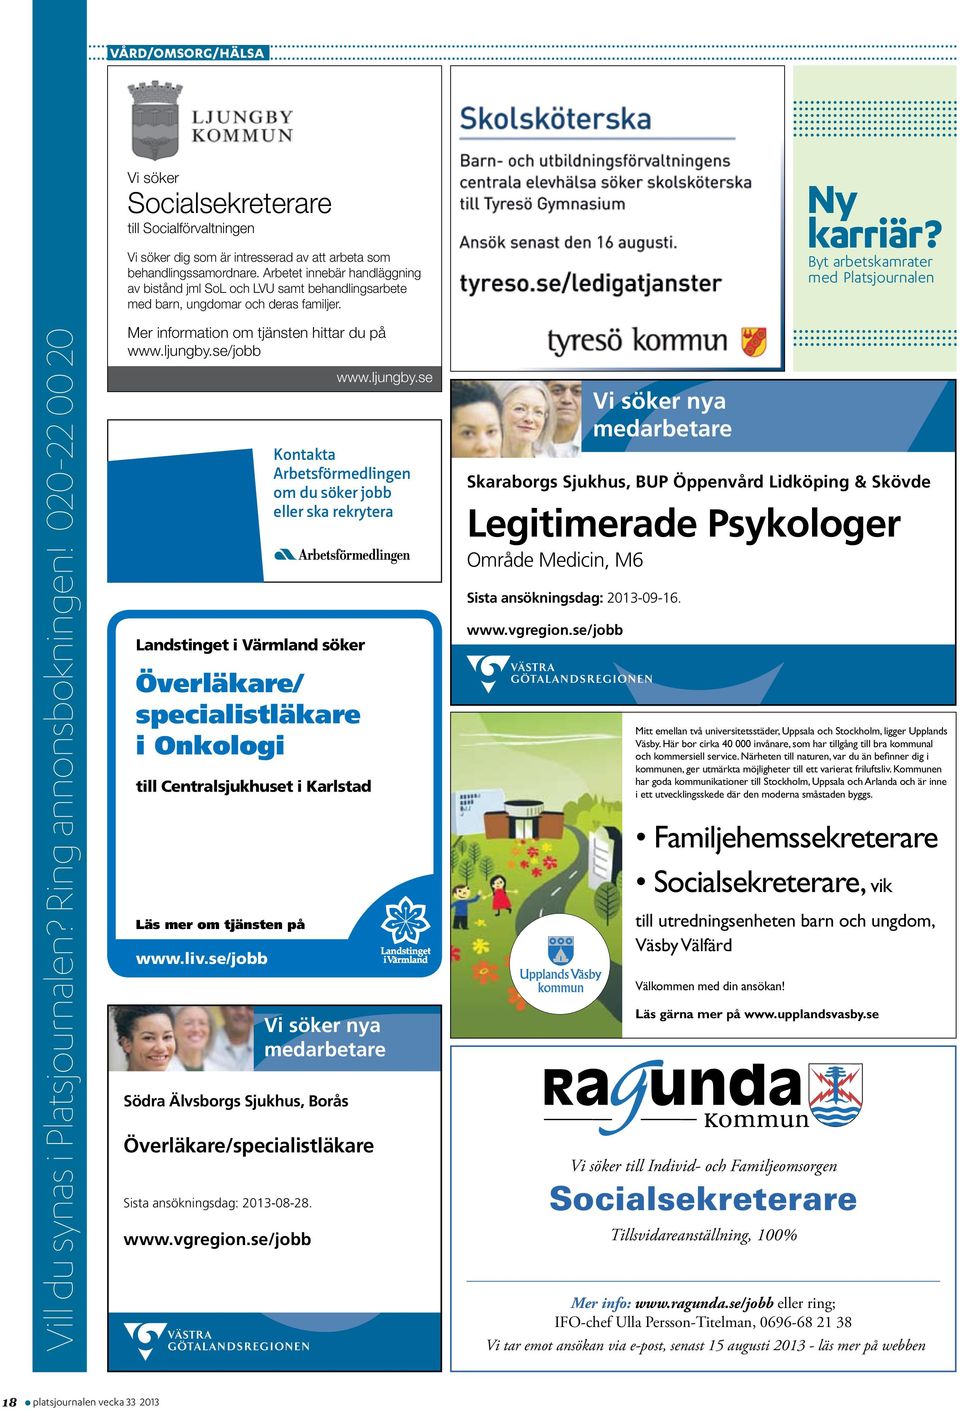 Byt arbets kam rater med Platsjournalen Vill du synas i Platsjournalen? Ring annonsbokningen! 020-22 00 20 Mer information om tjänsten hittar du på www.ljungby.